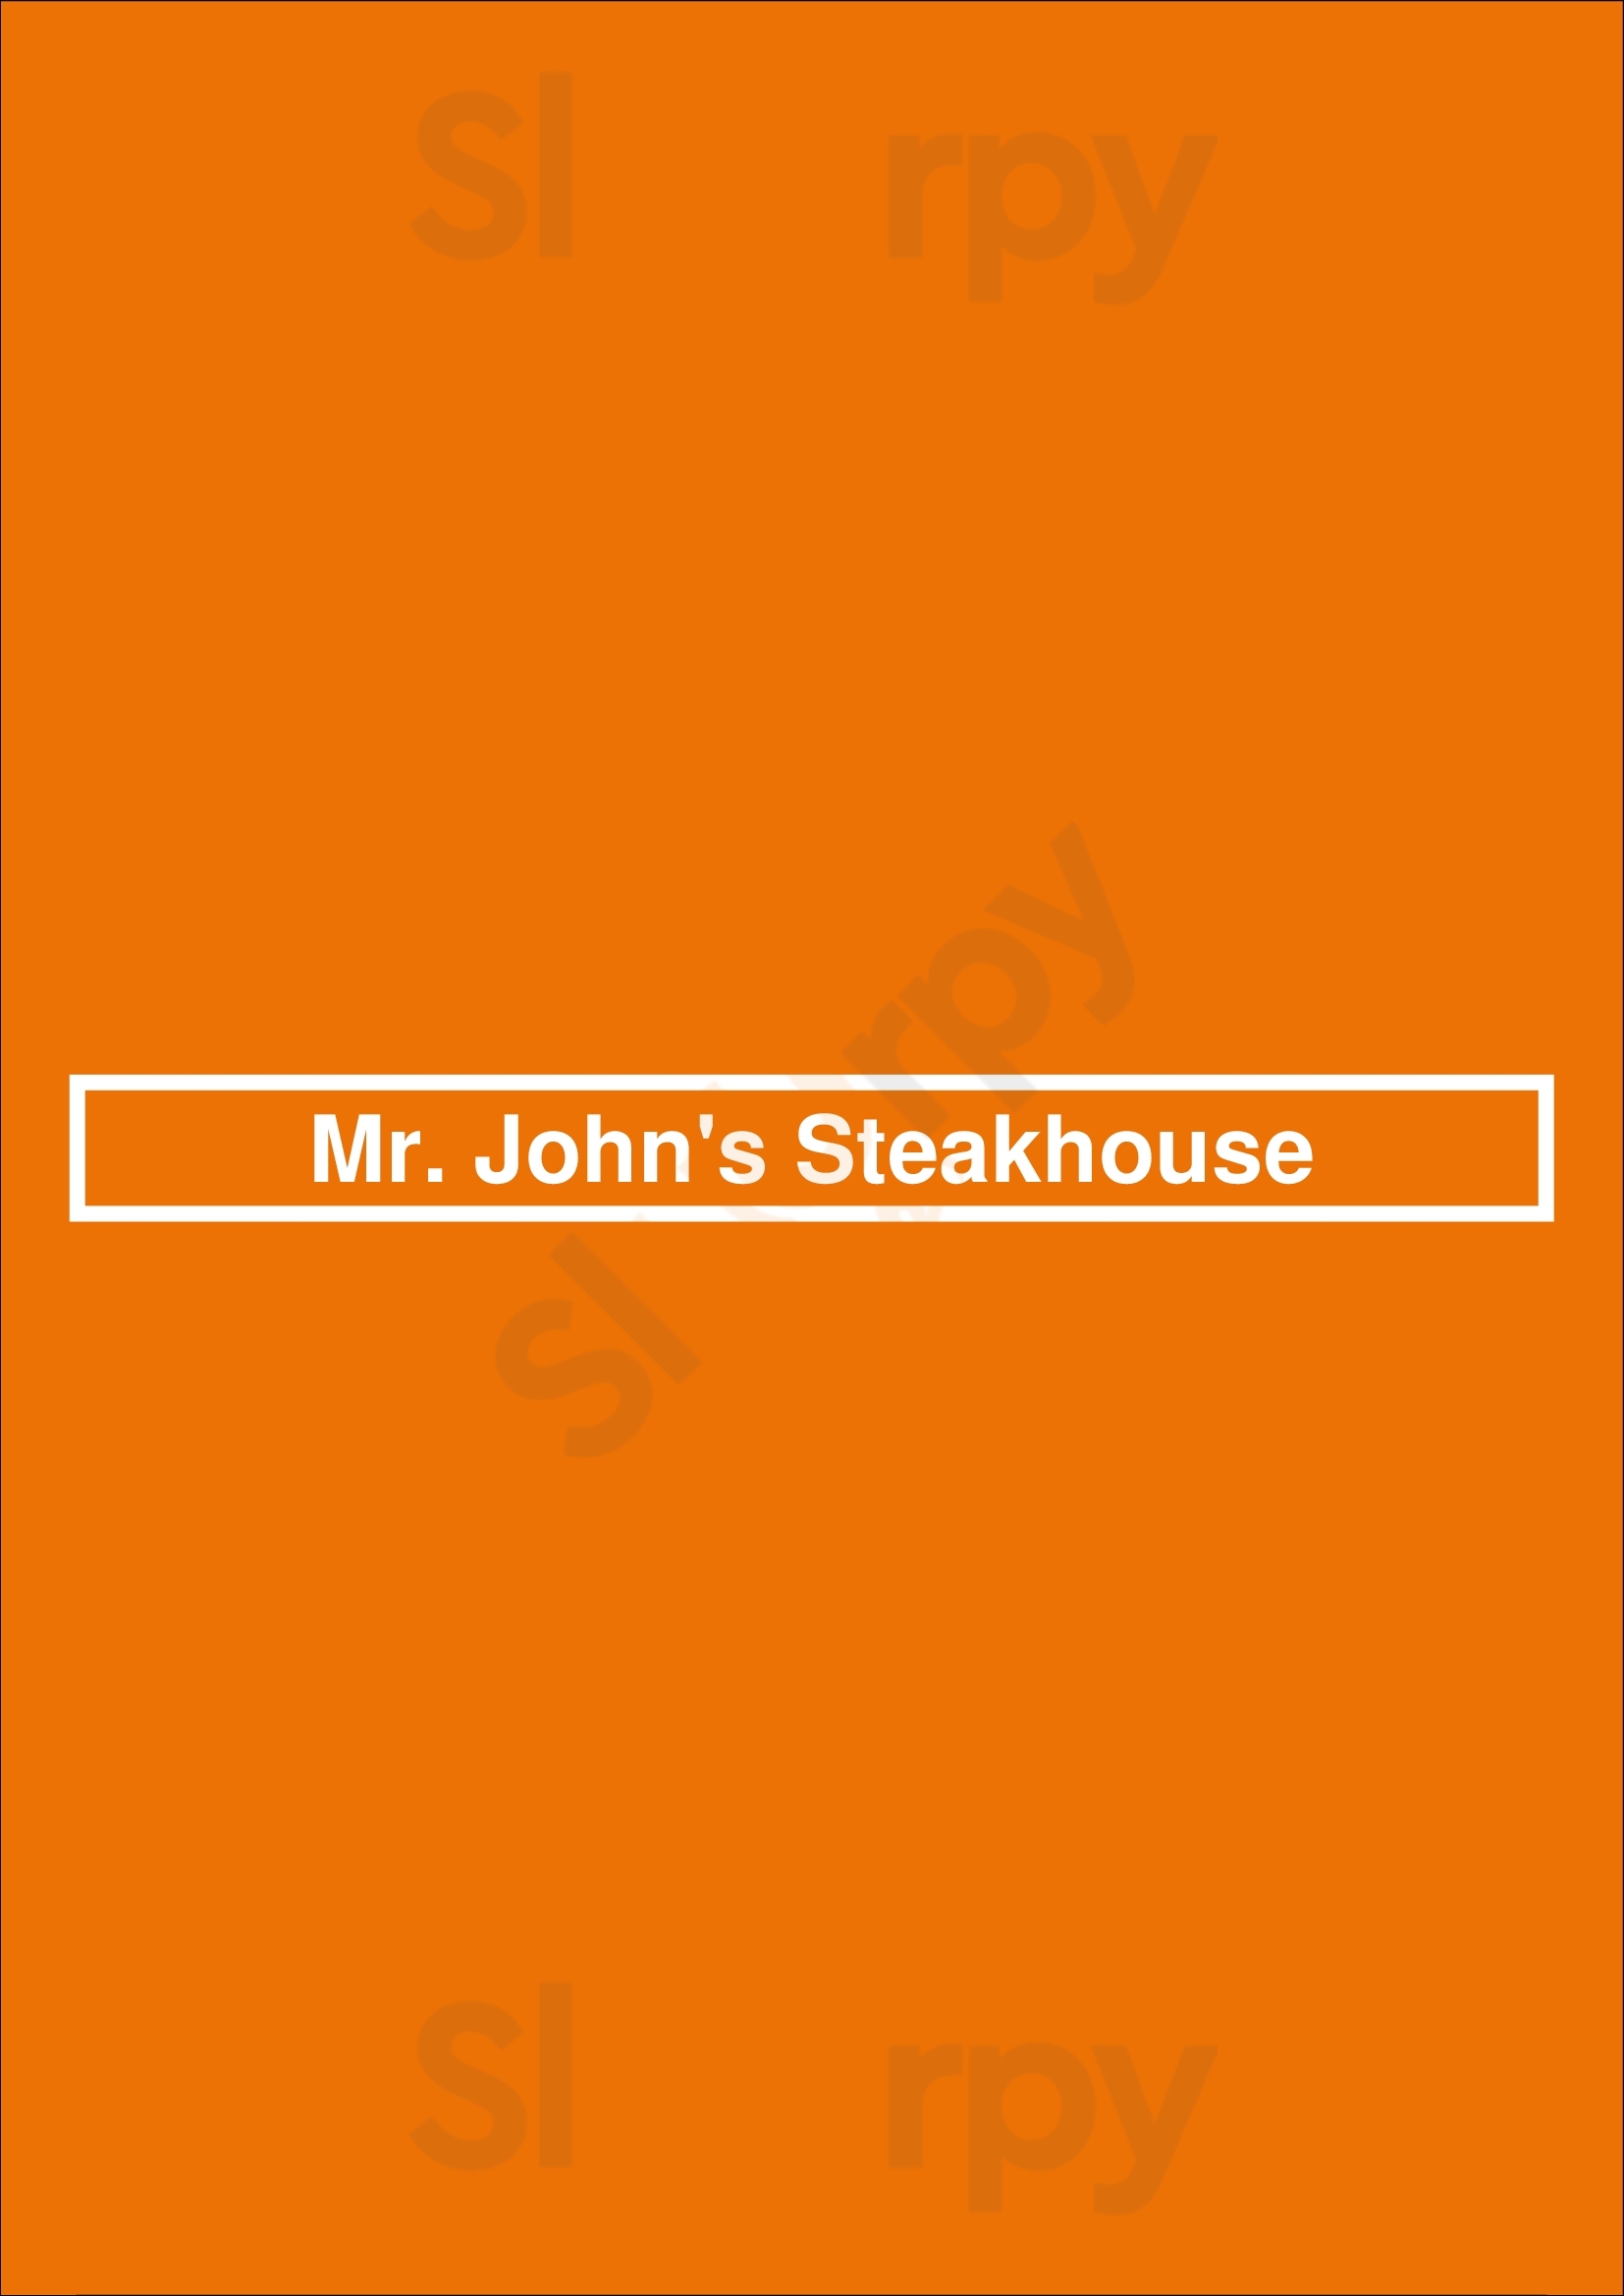 Mr. John's Steakhouse New Orleans Menu - 1